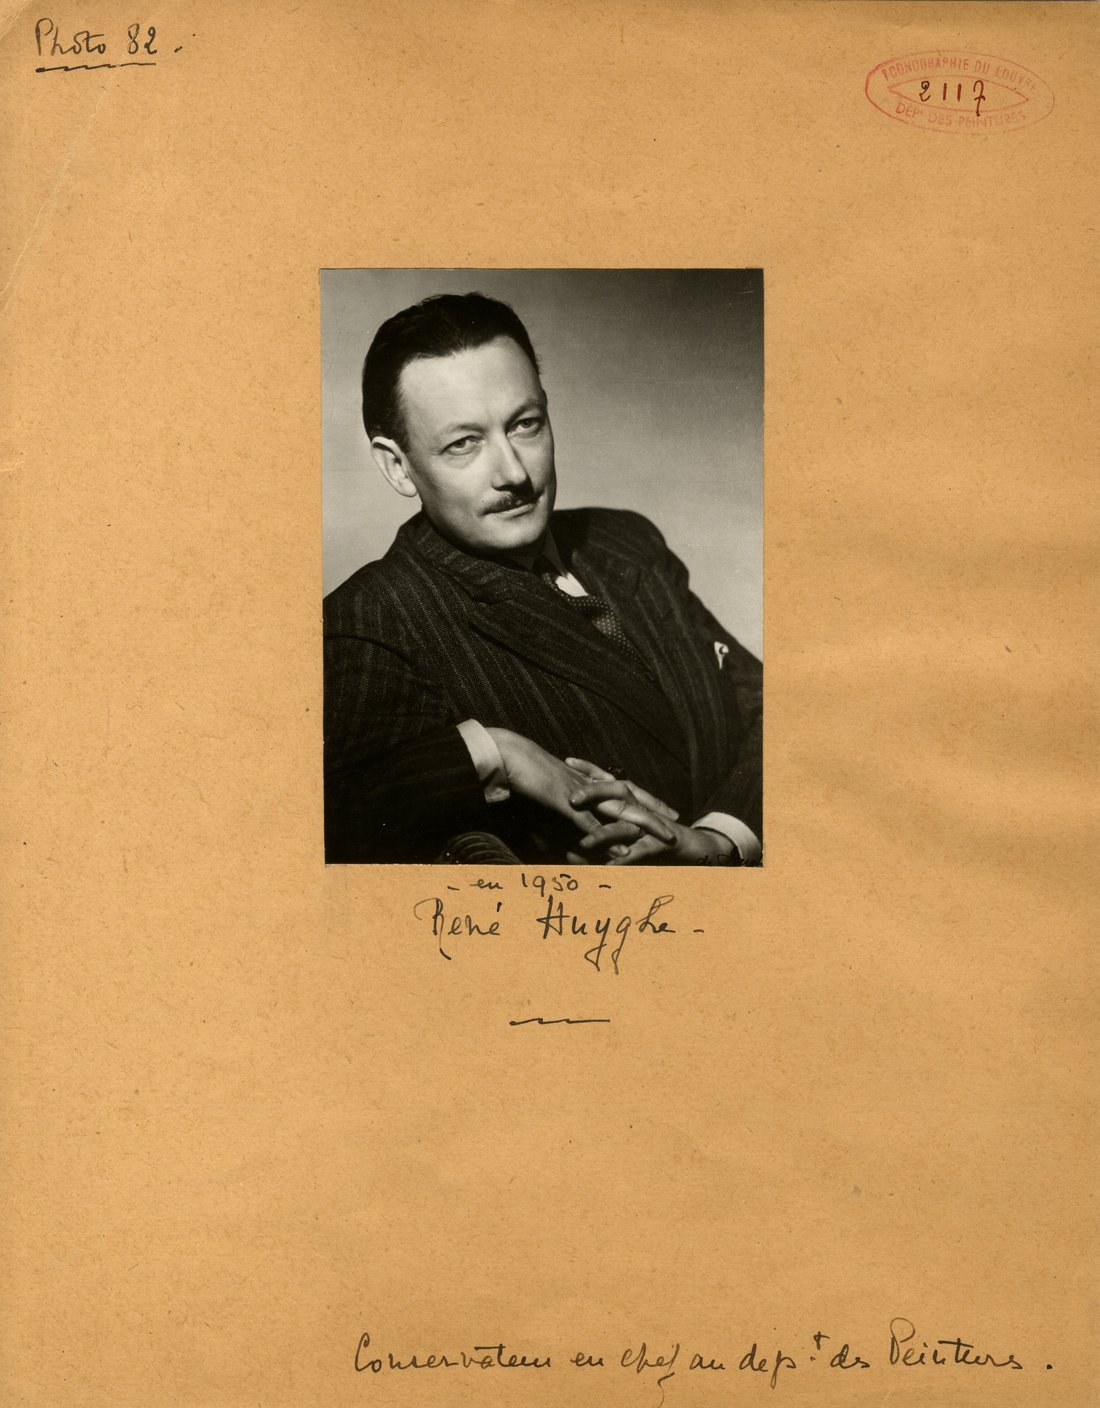 René Huyghe, photographie de 1950. Source : Documentation du Louvre.